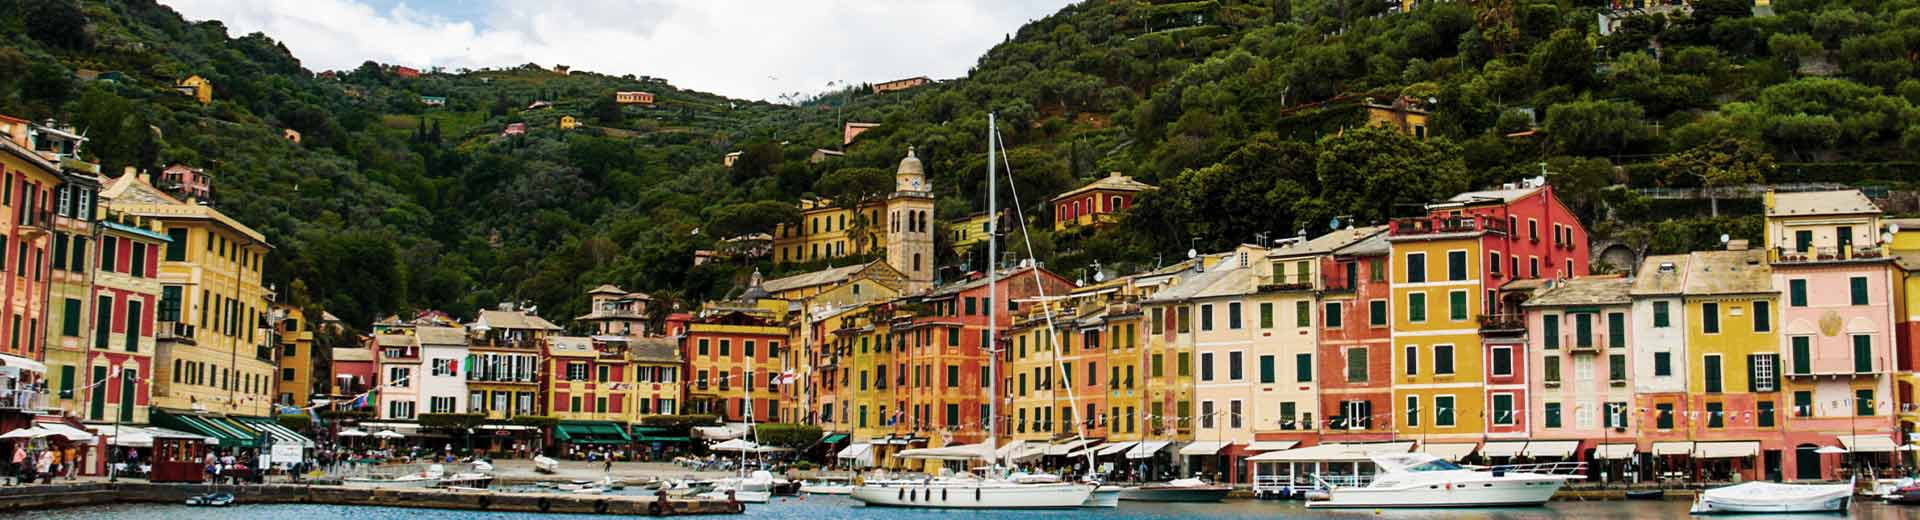 Les beaux bâtiments colorés de Gênes s'étendaient le long du front de mer.